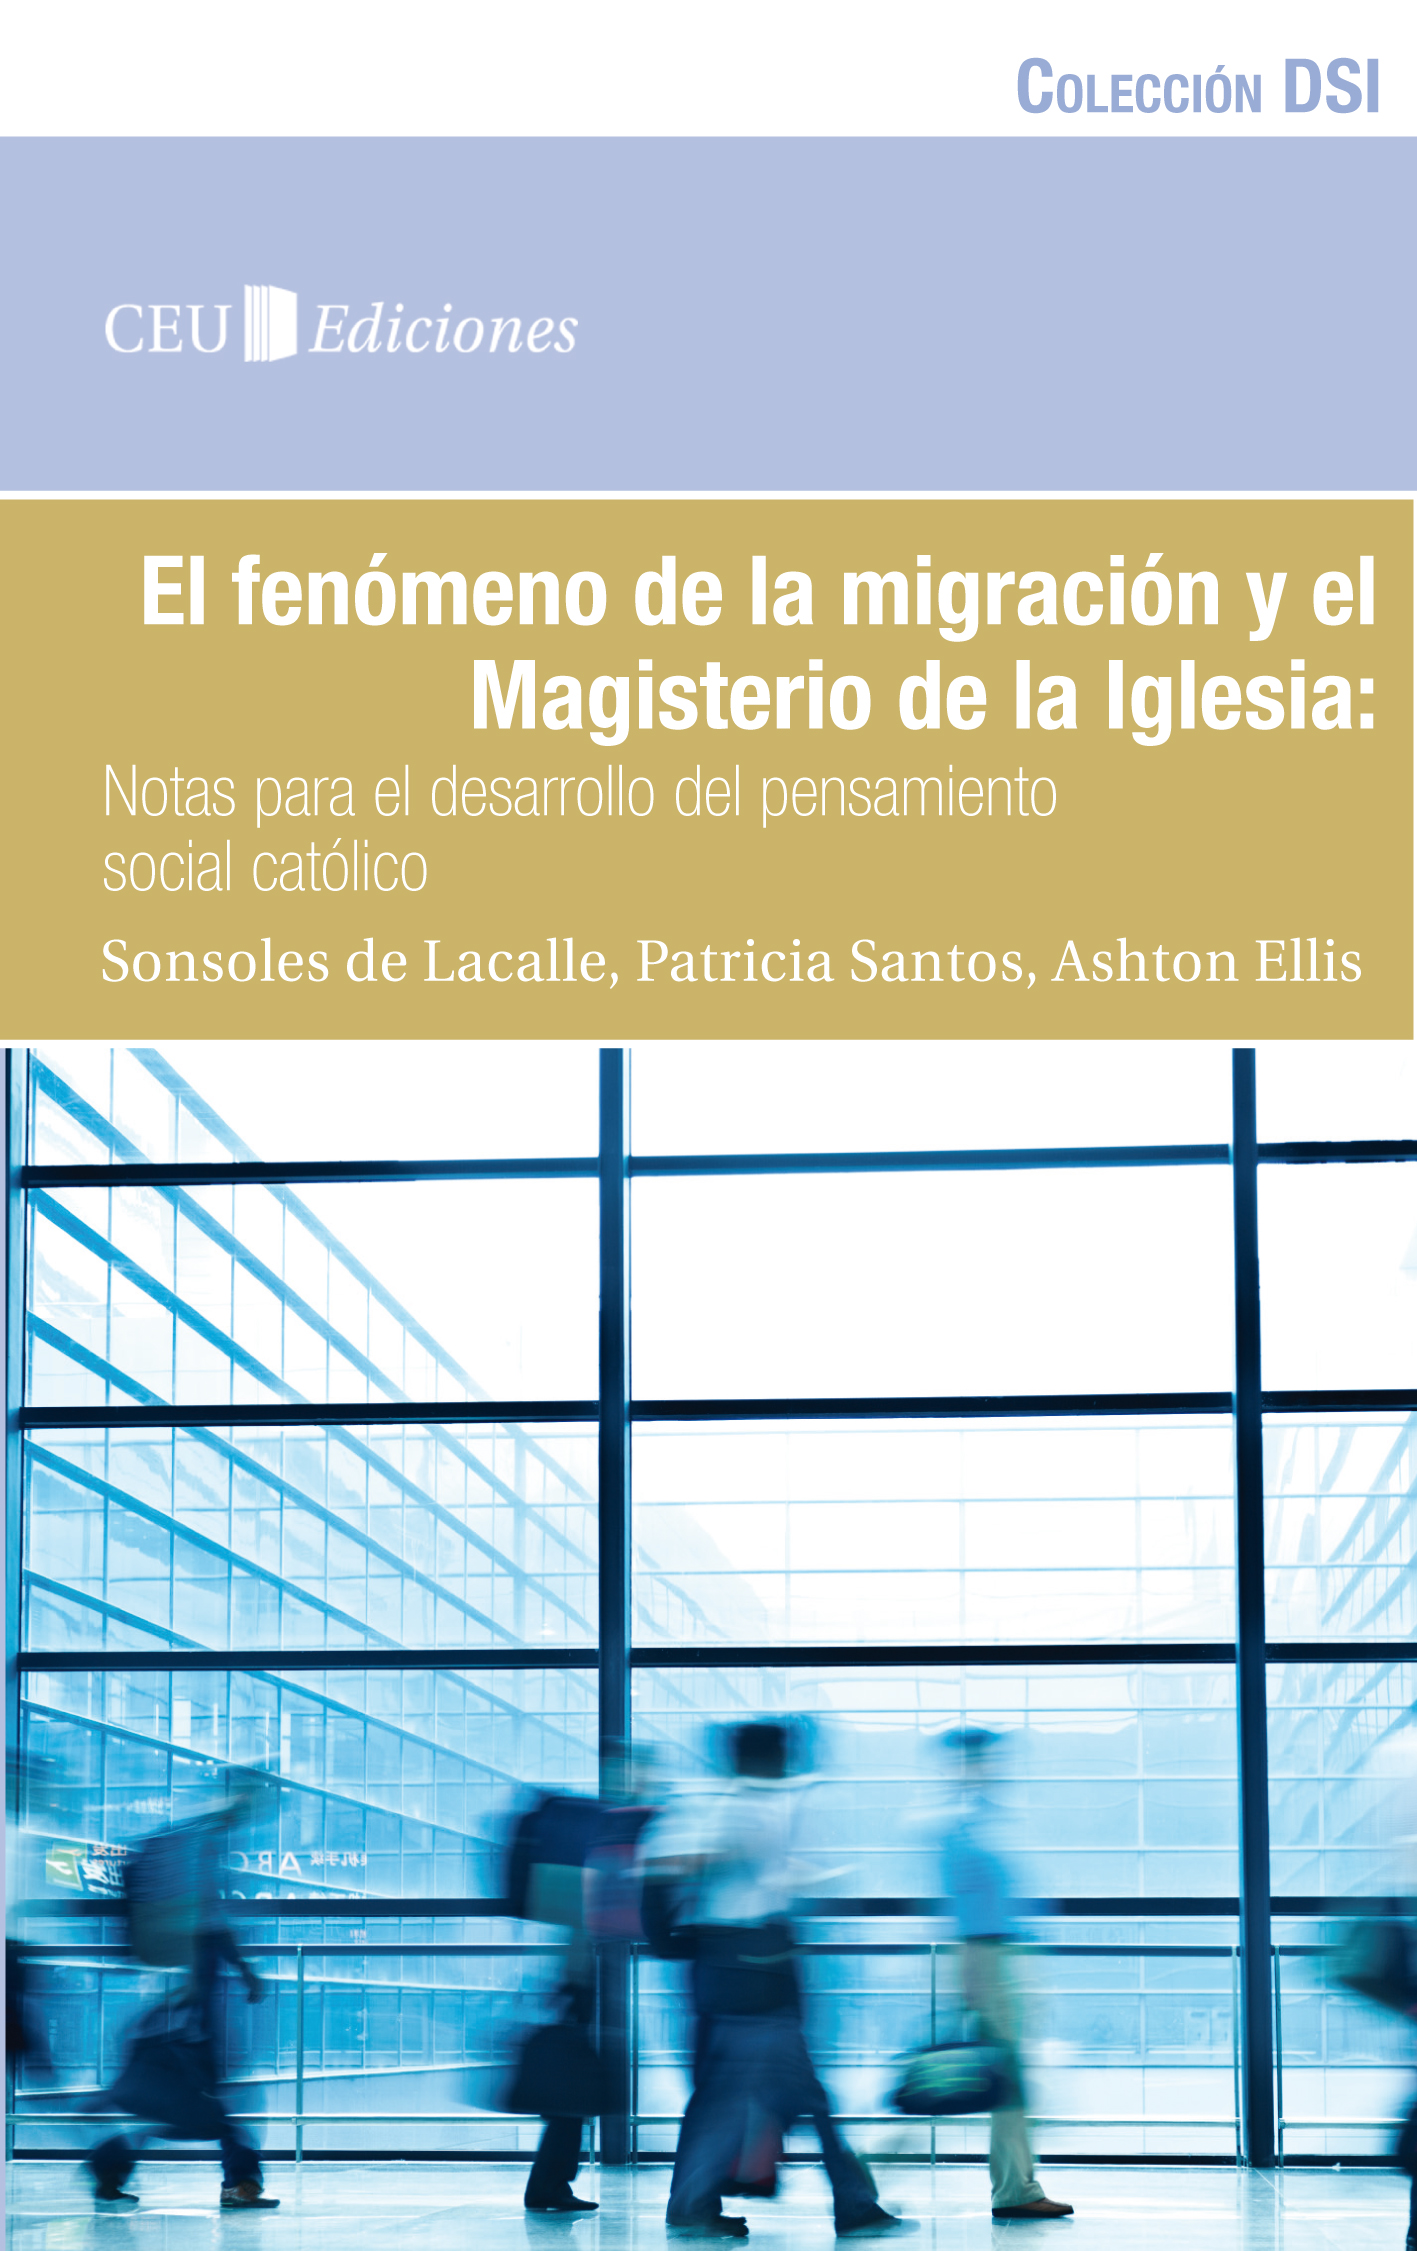 El fenómeno de la migración y el Magisterio de la Iglesia: notas para el  desarrollo del pensamiento social católico - CEU Ediciones